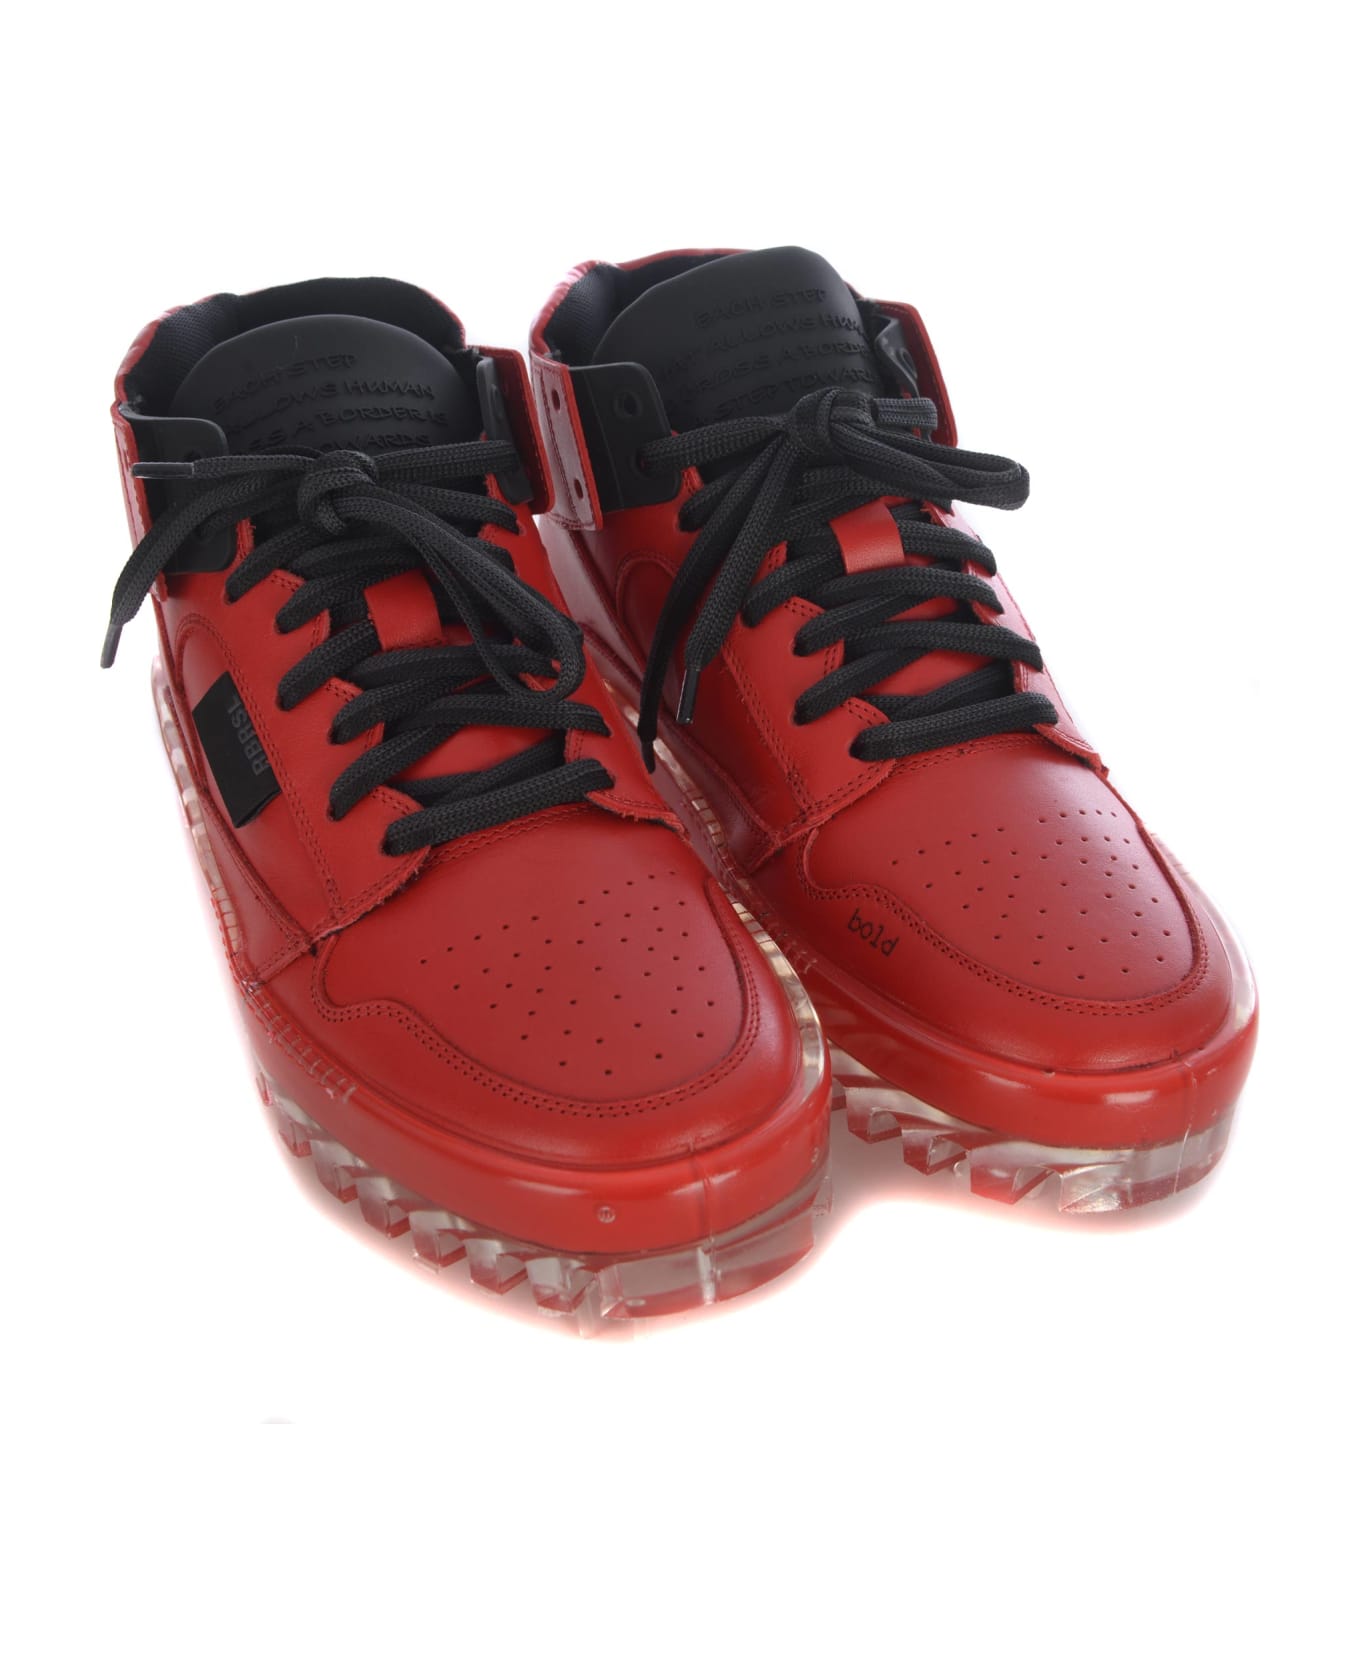 RBRSL Rubber Soul Sneakers Rbrsl In Leather - Rosso